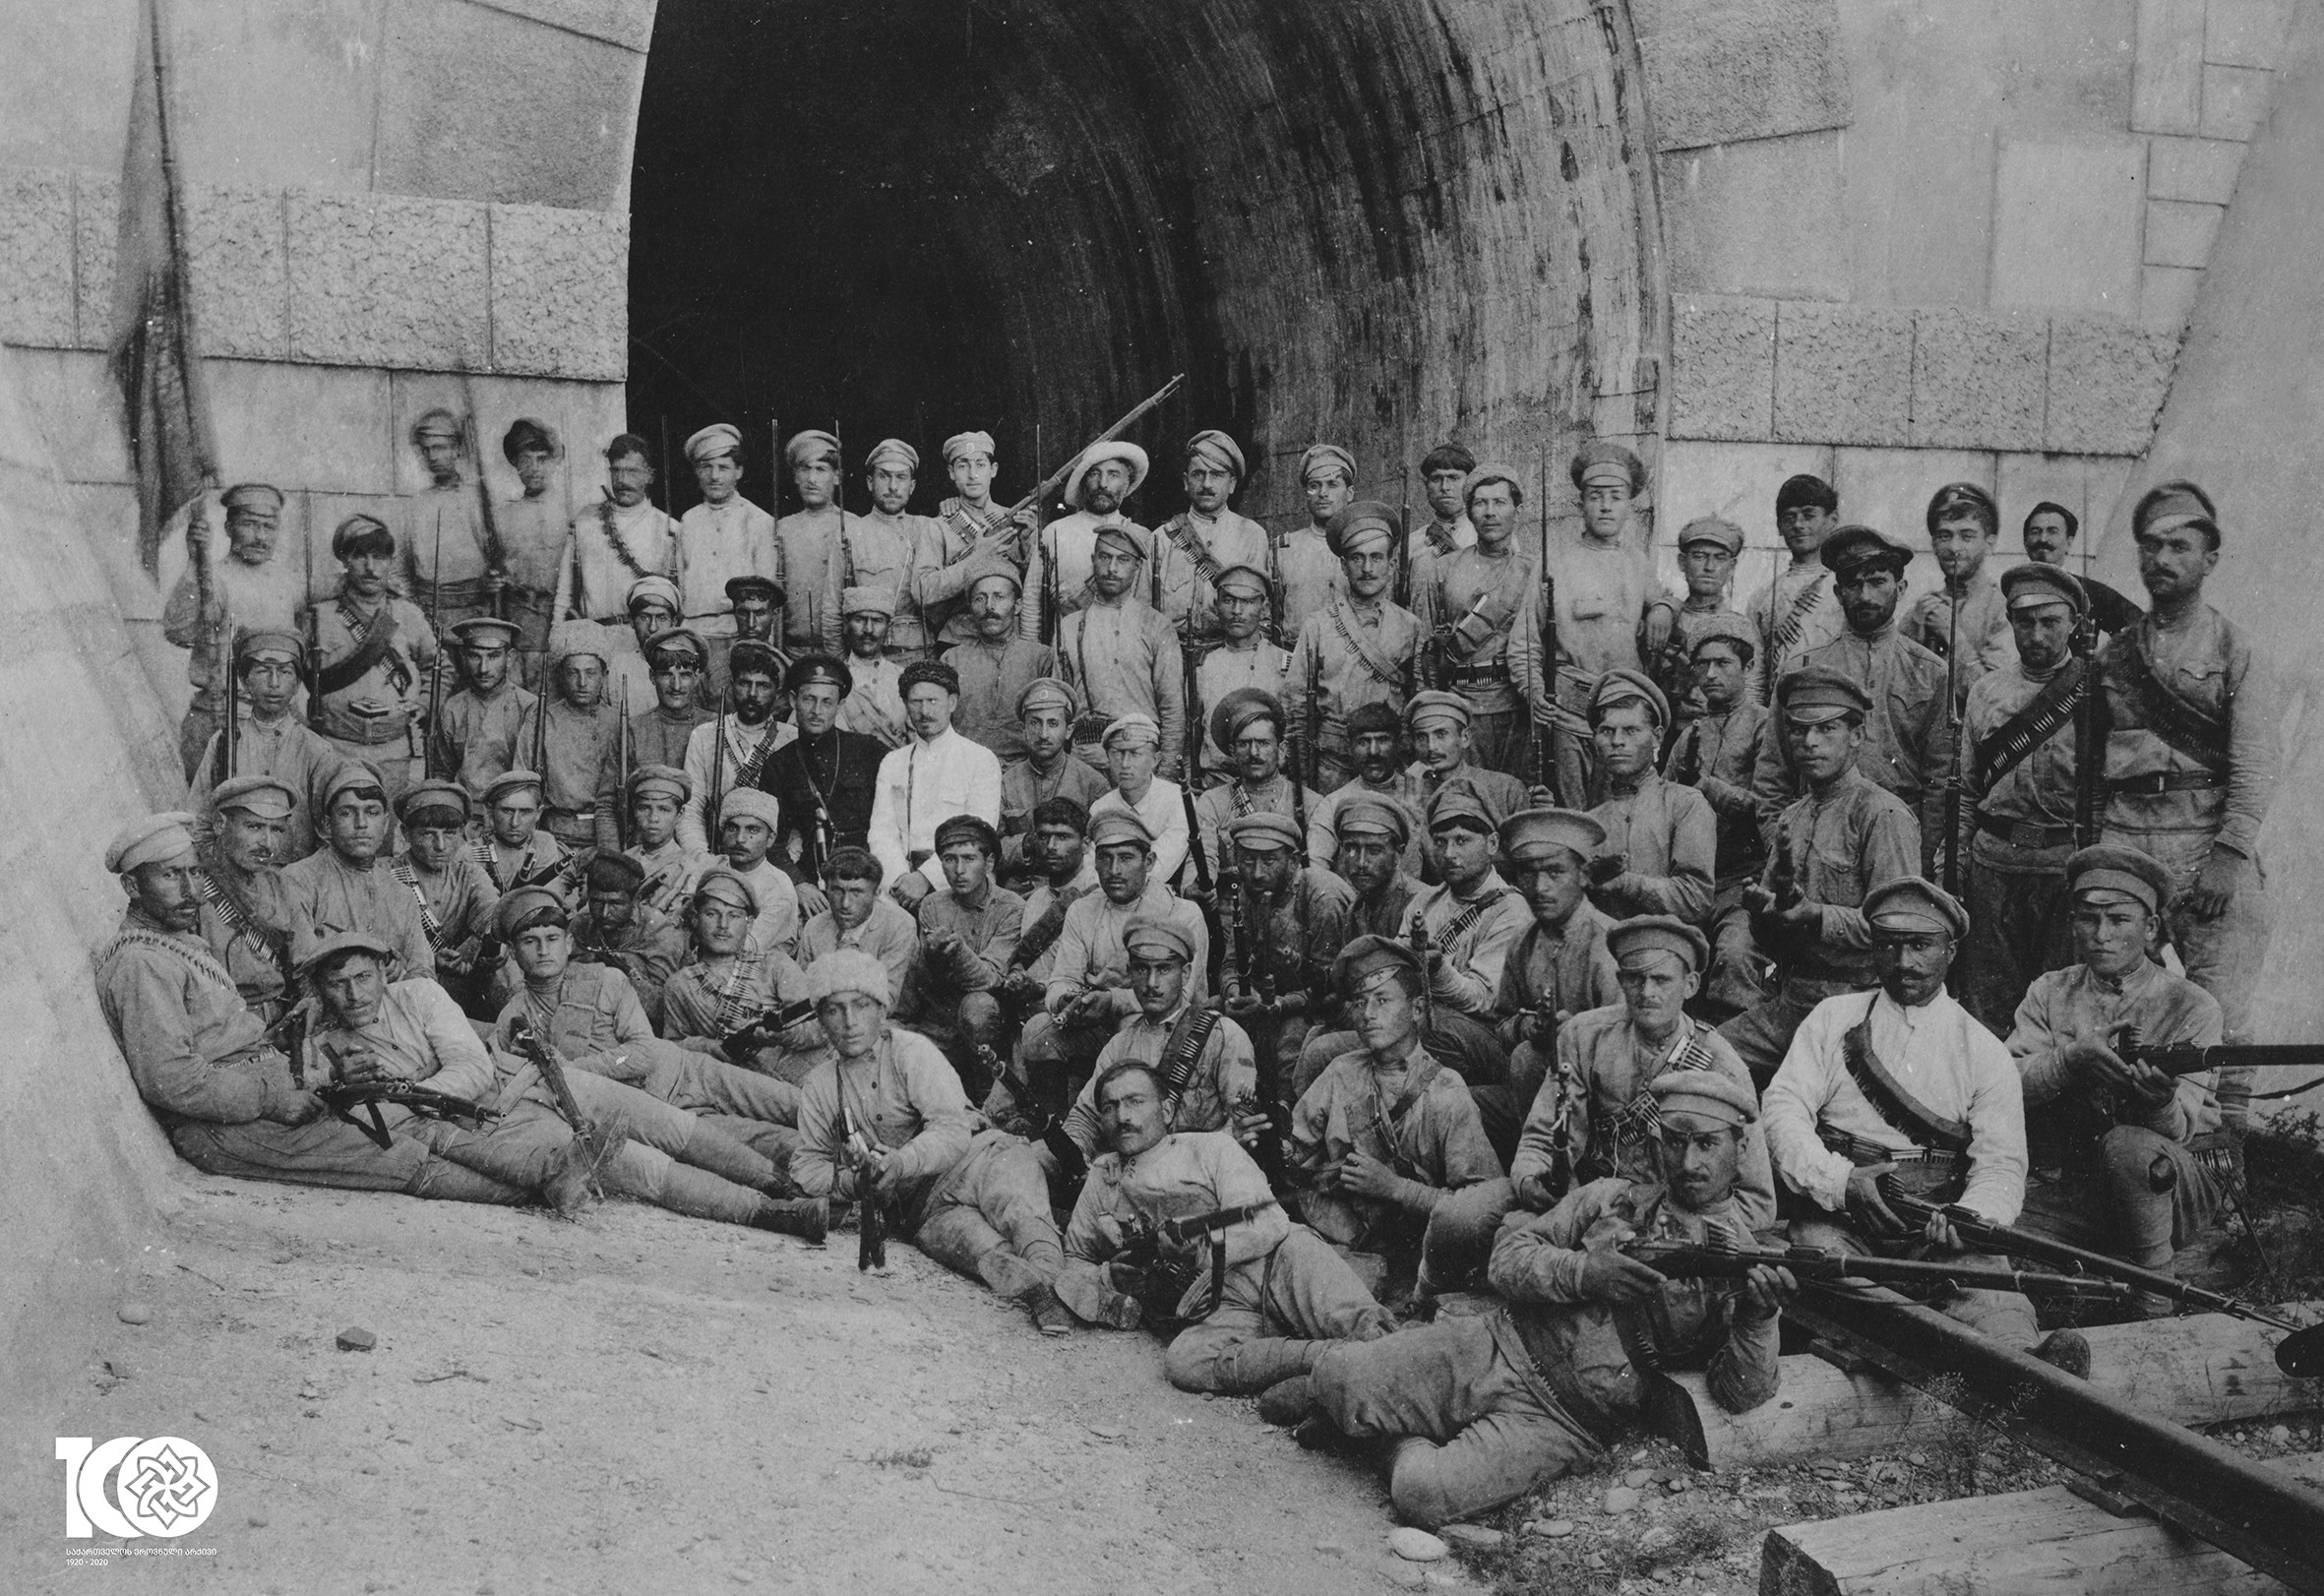 ქართველი მებრძოლები წიფის გვირაბთან. 1918-1921 წლები
<br>
Georgian militants at Tsipa tunnel. 1918-1921